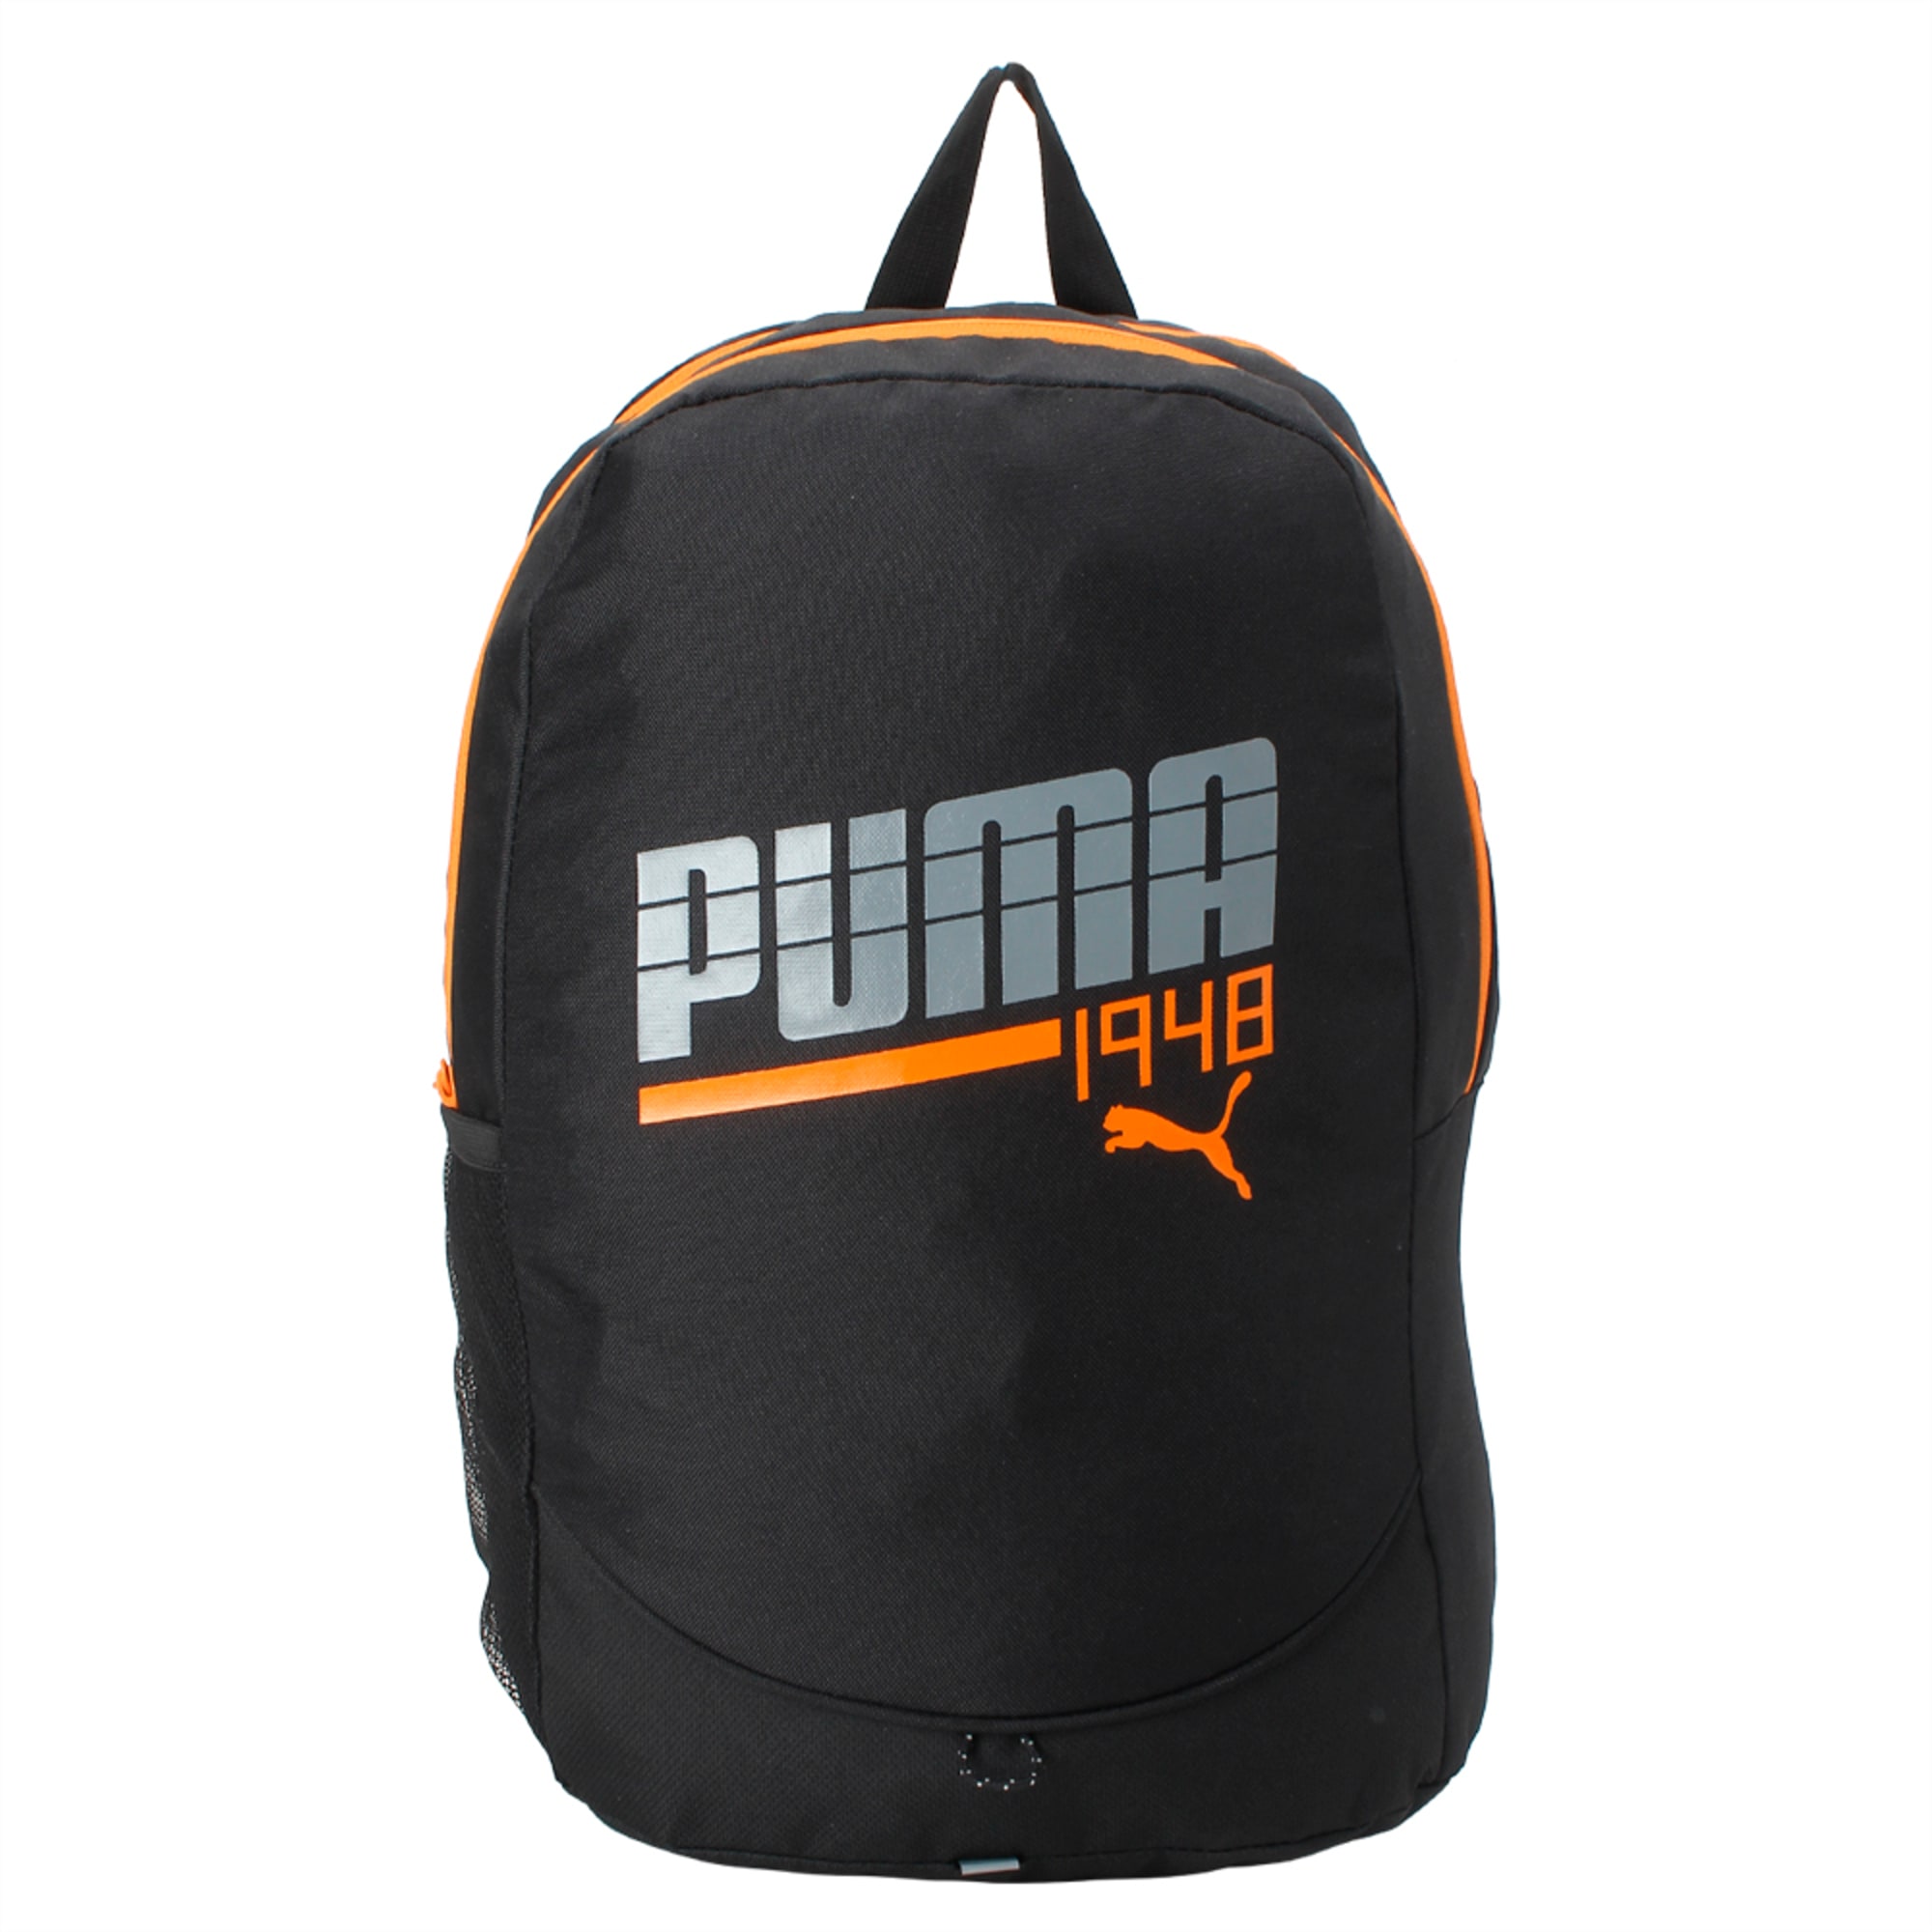 puma 1948 backpack